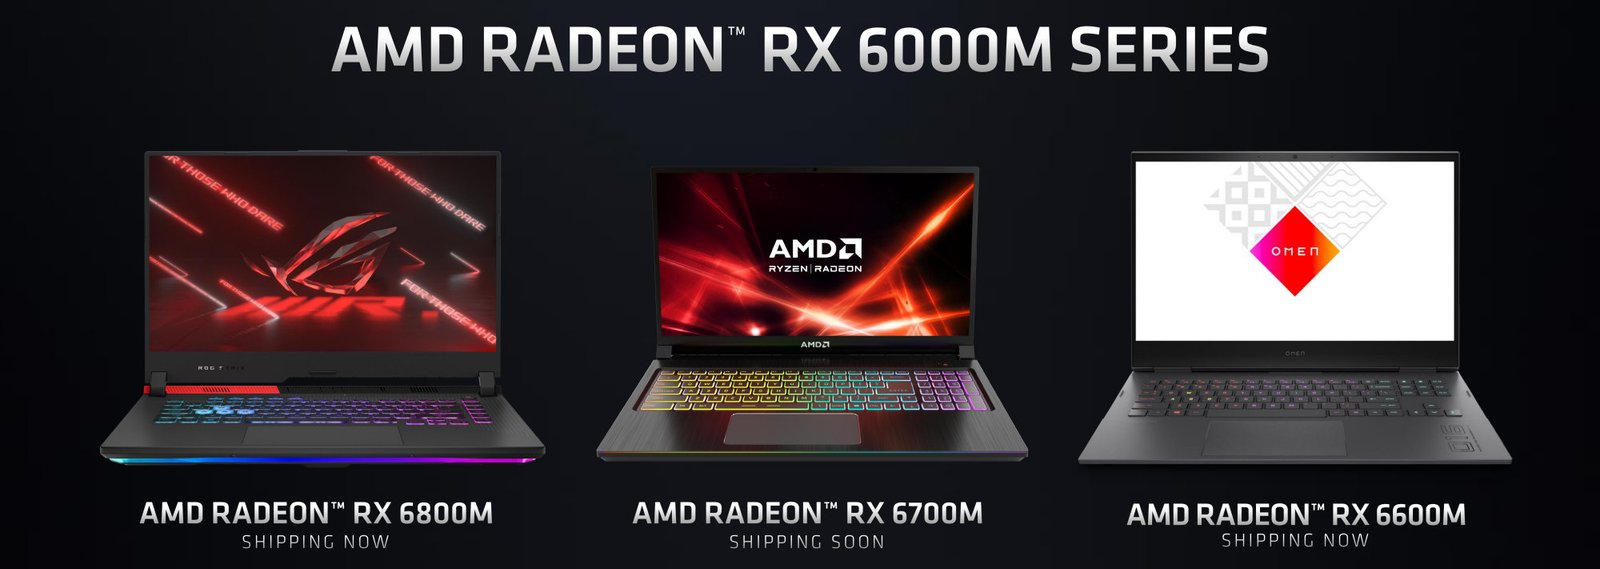 Mobilne karty graficzne Radeon RX 6000M od AMD, Radeon RX 6000M, karty graficzne Radeon RX 6000M, mobilne Radeon RX 6000M, AMD Radeon RX 6000M